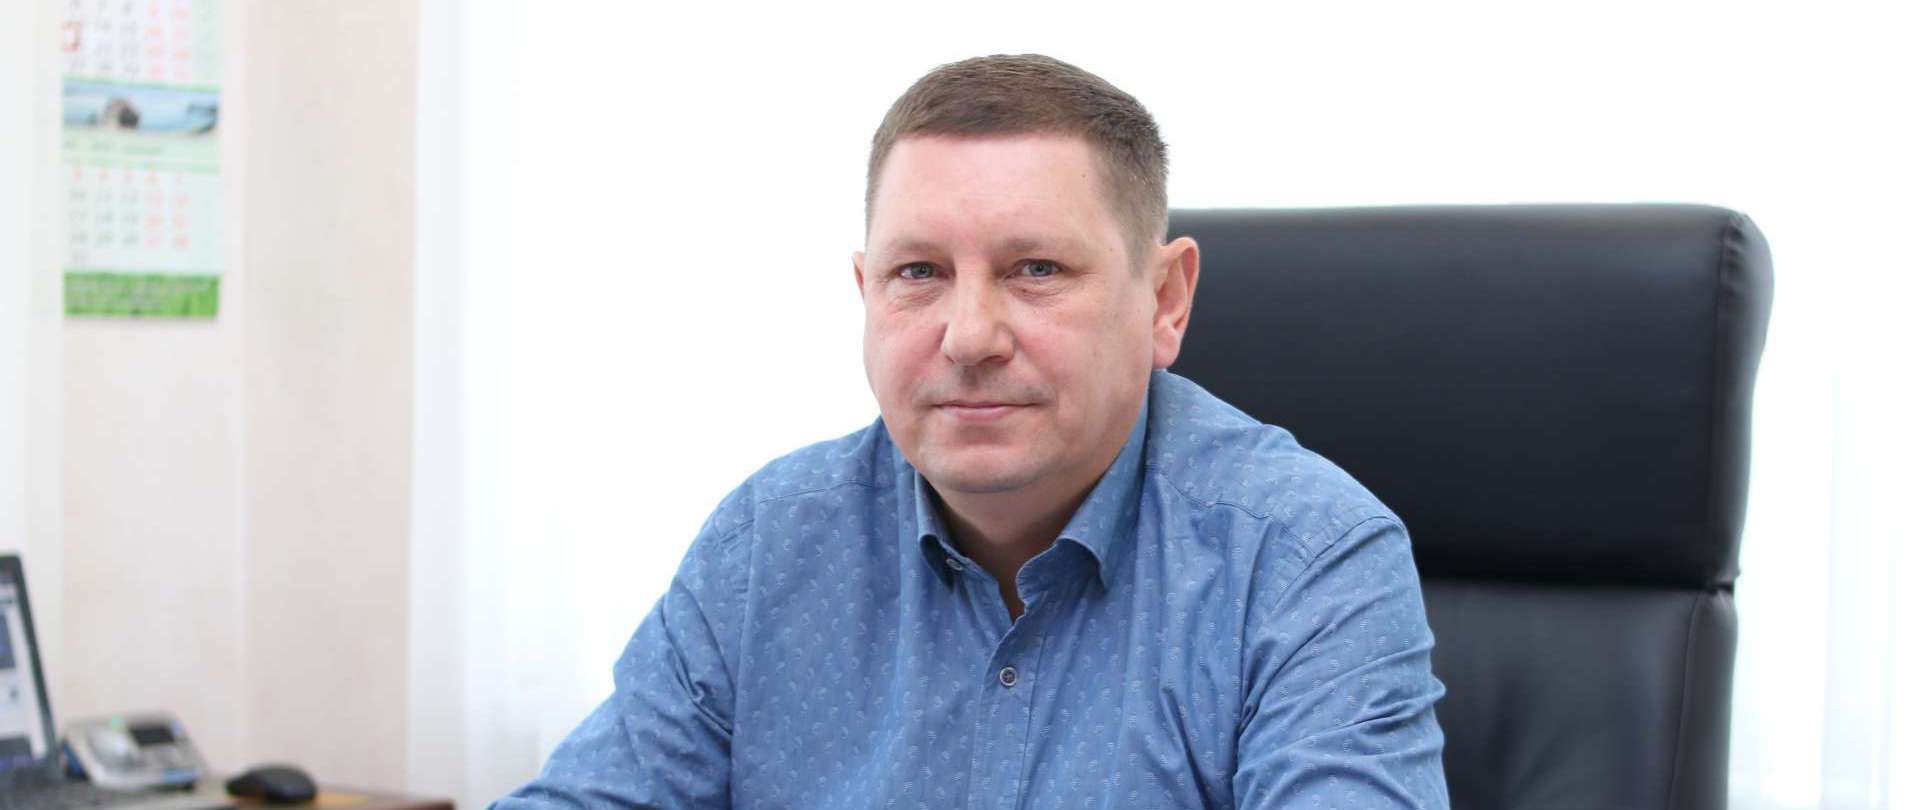 22 апреля свой день рождения празднует Дудник Владимир Викторович — Генеральный директор в ООО «Дирекция ХПП»